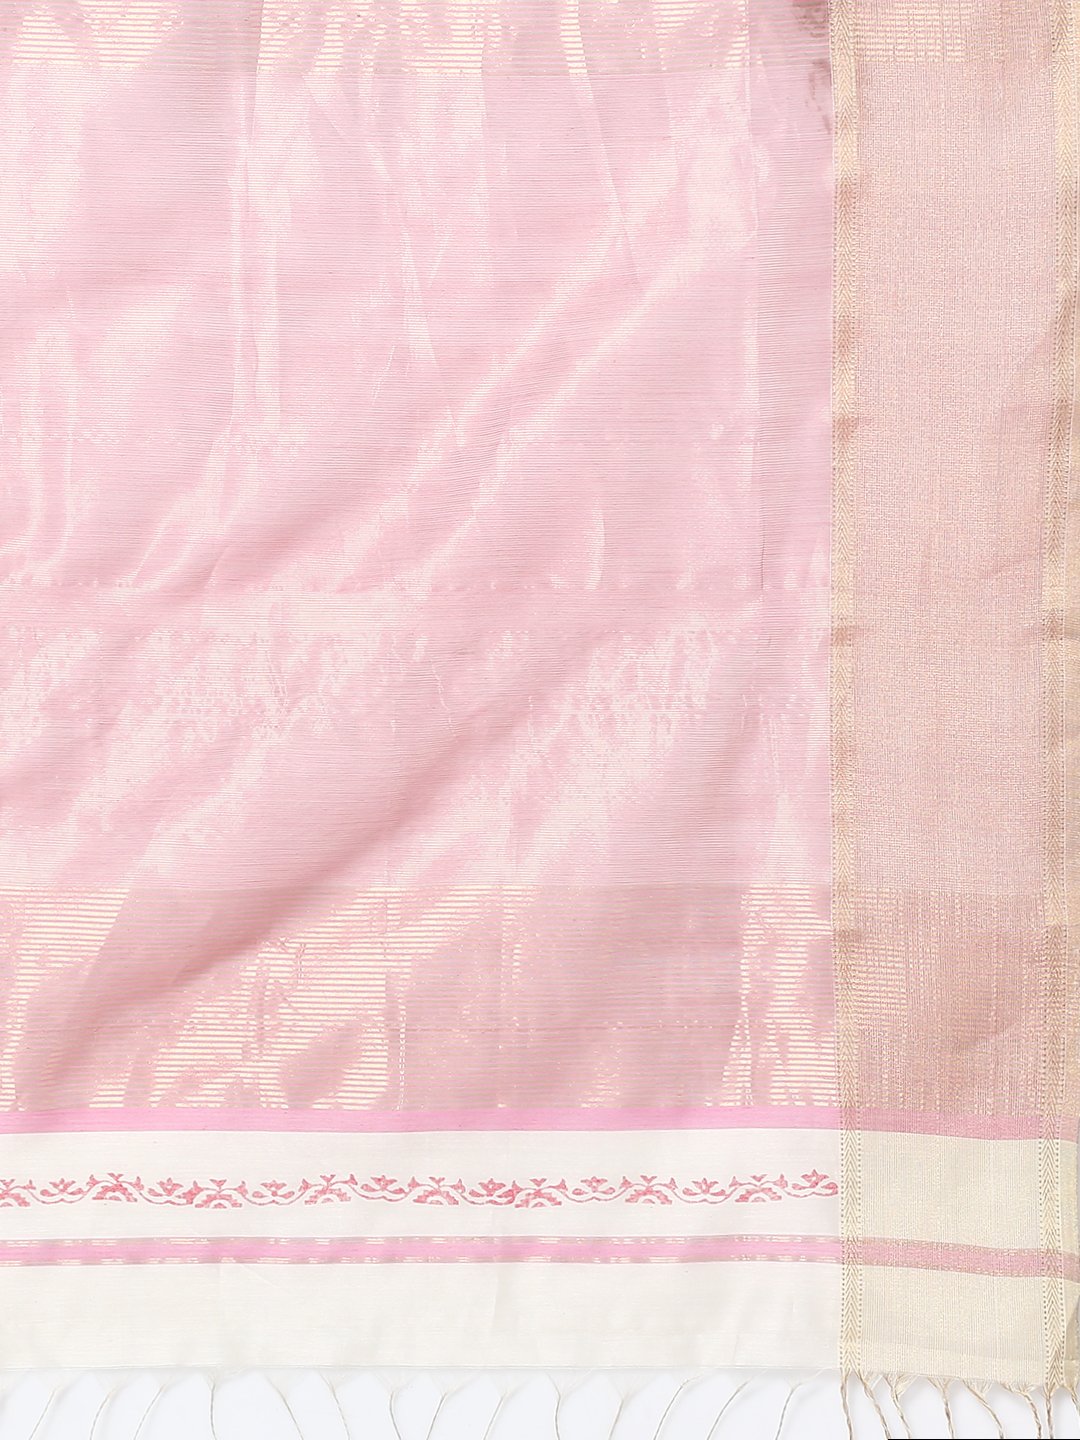 White & pink silk cotton printed maheswari saree